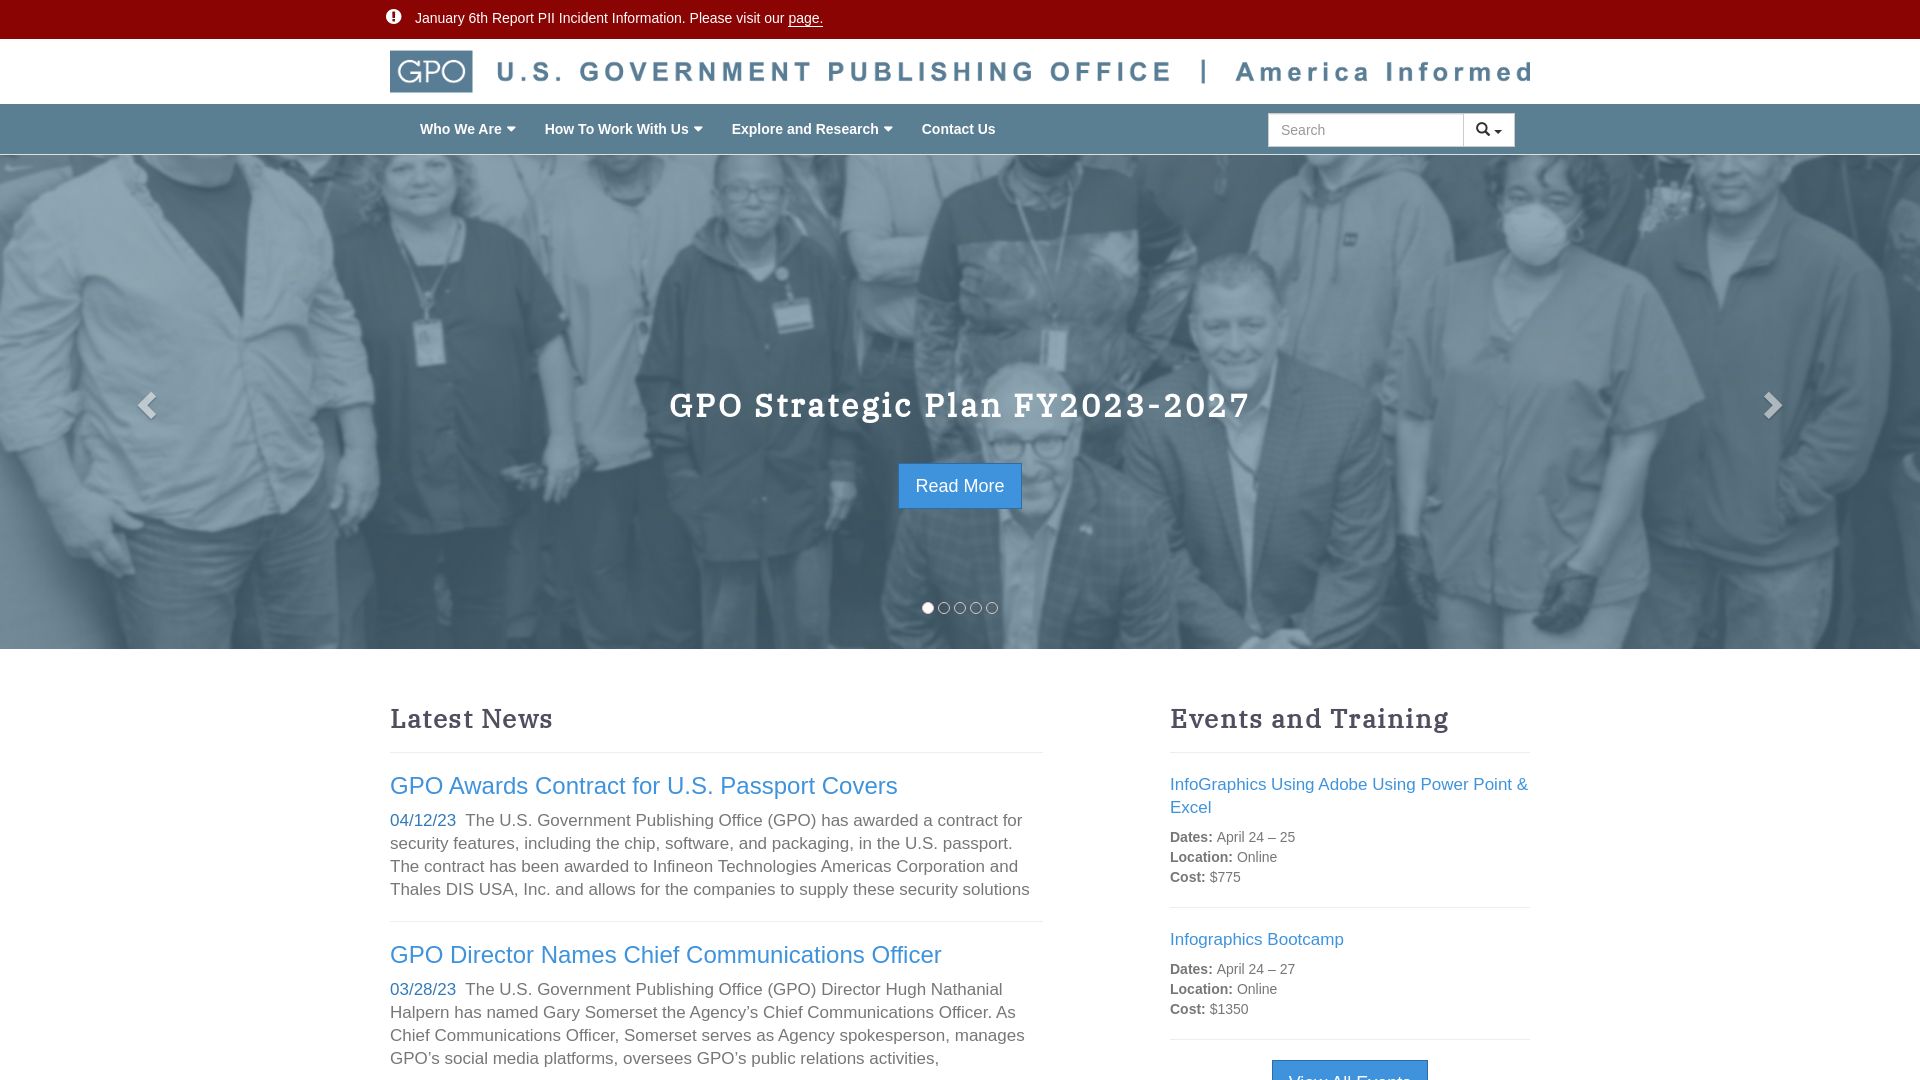 Website status gpo.gov is   ONLINE